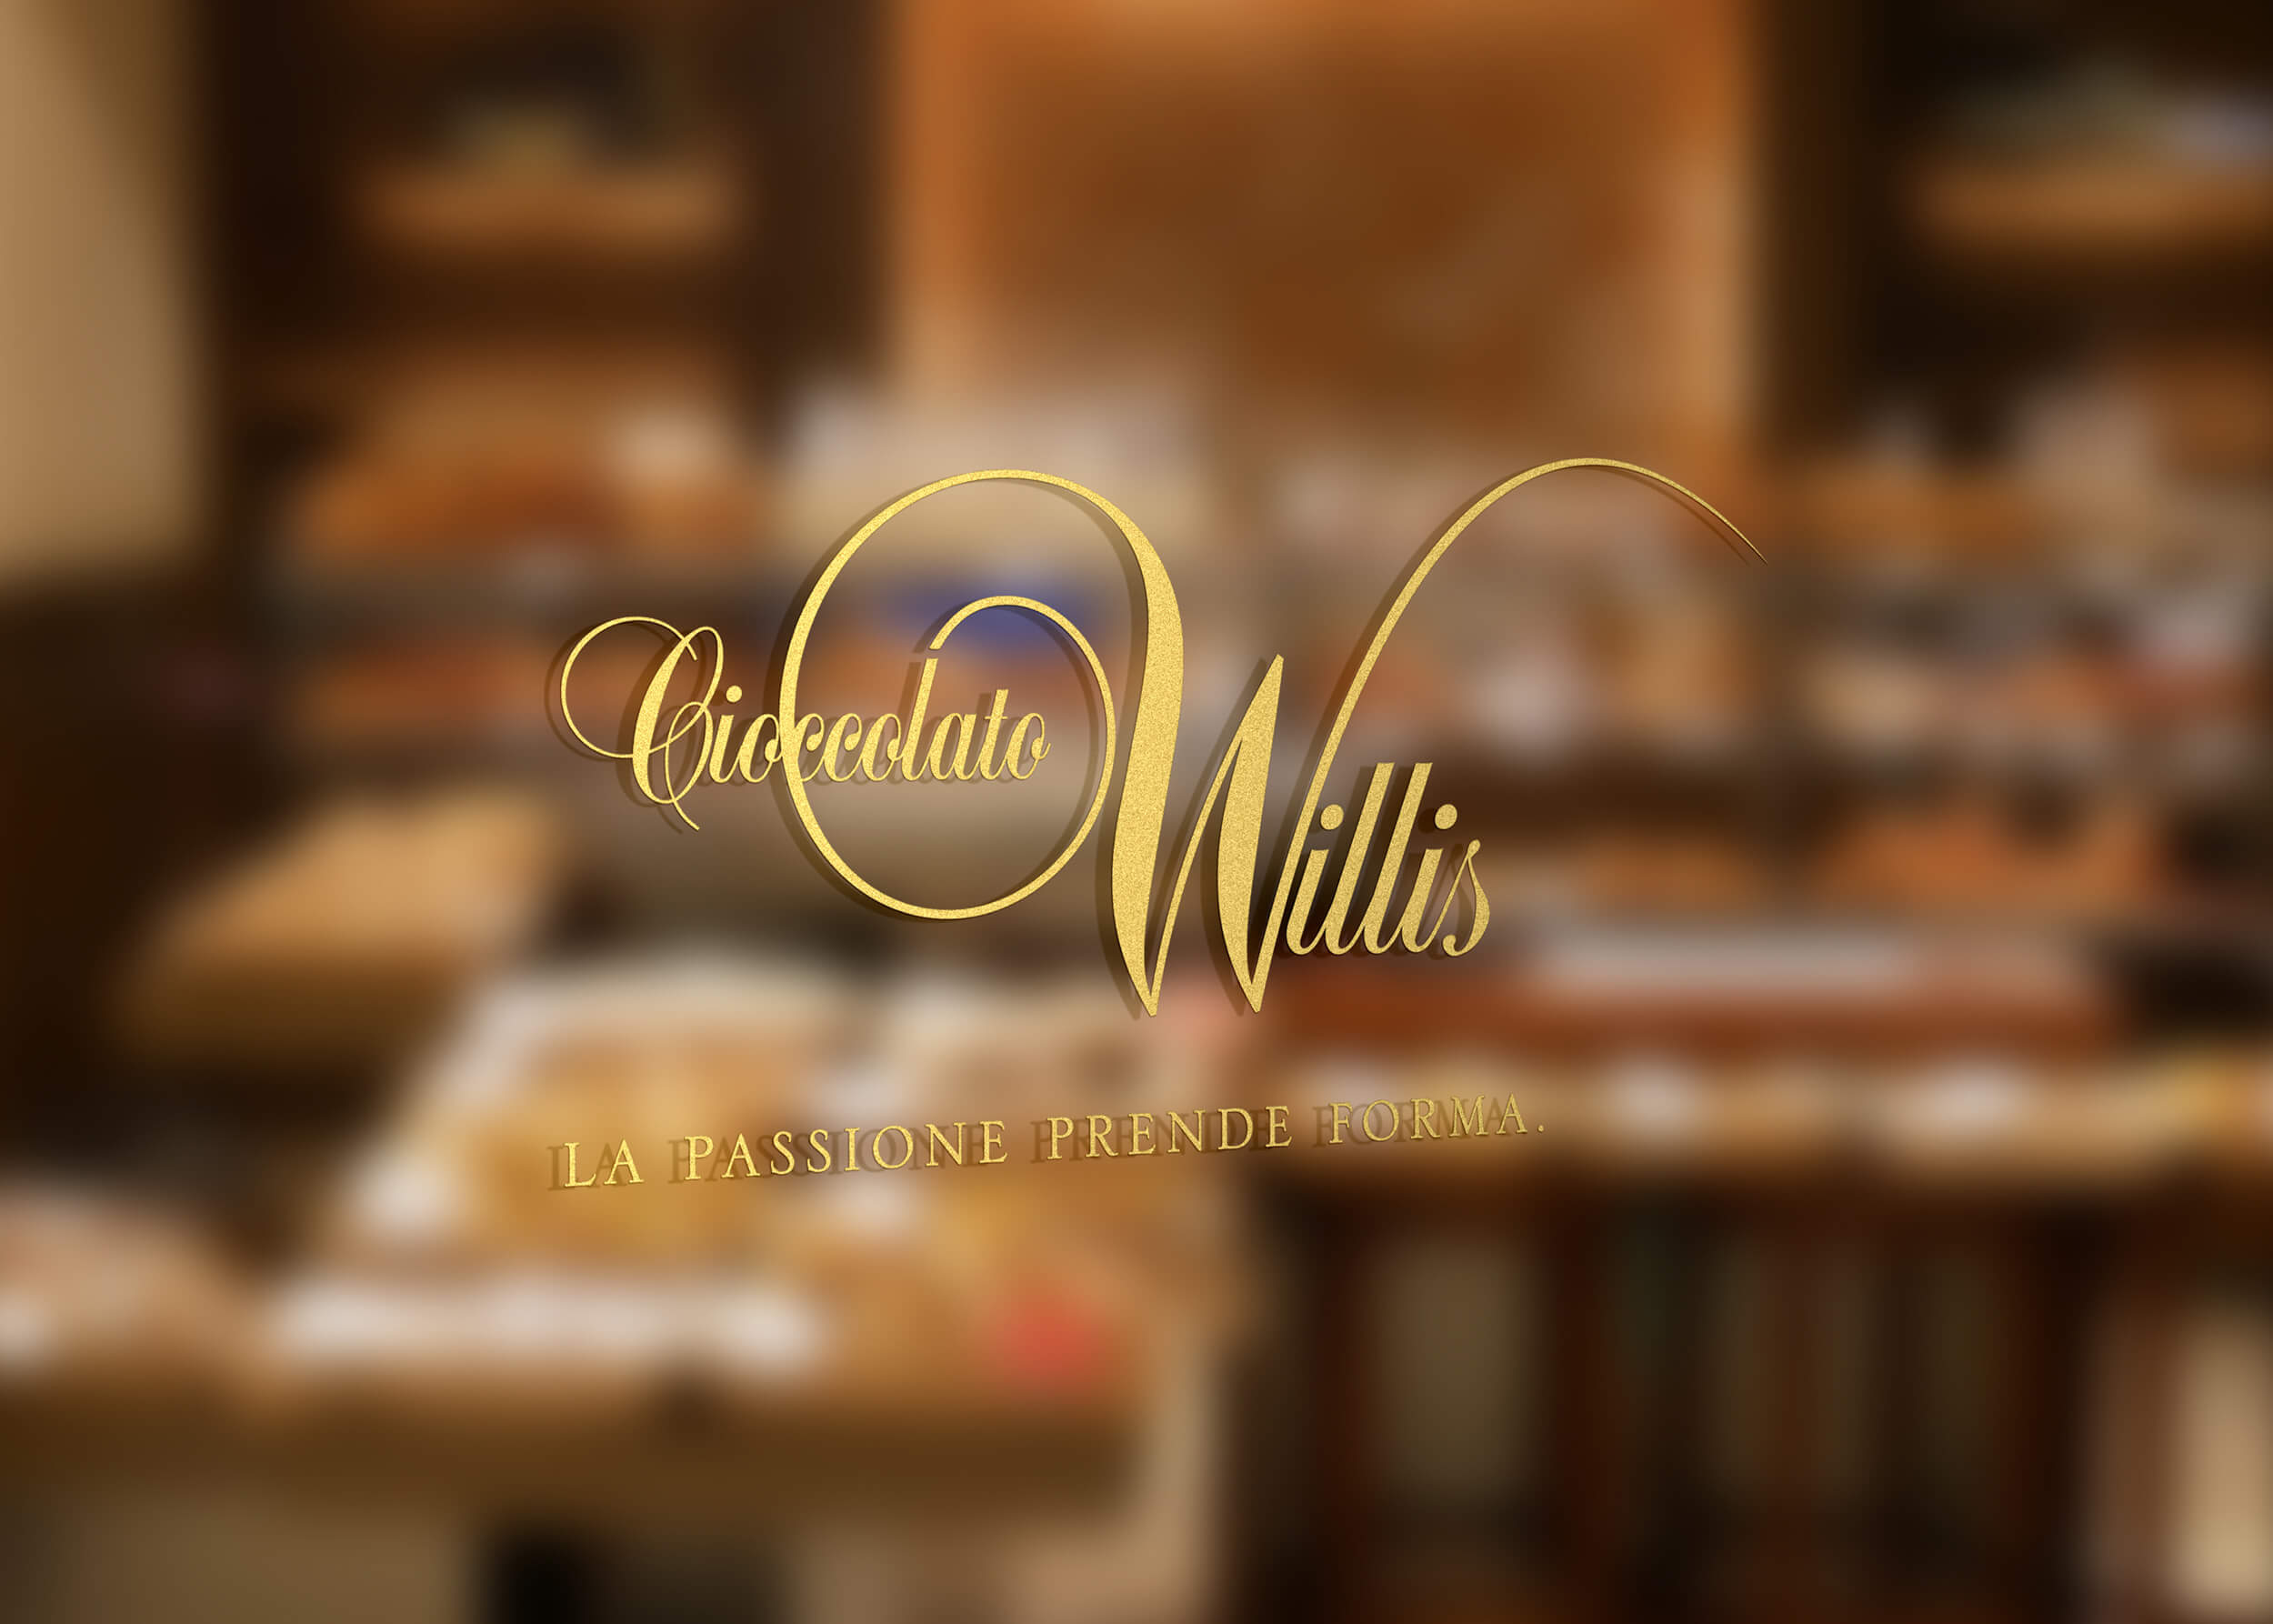 Cioccolato Willis